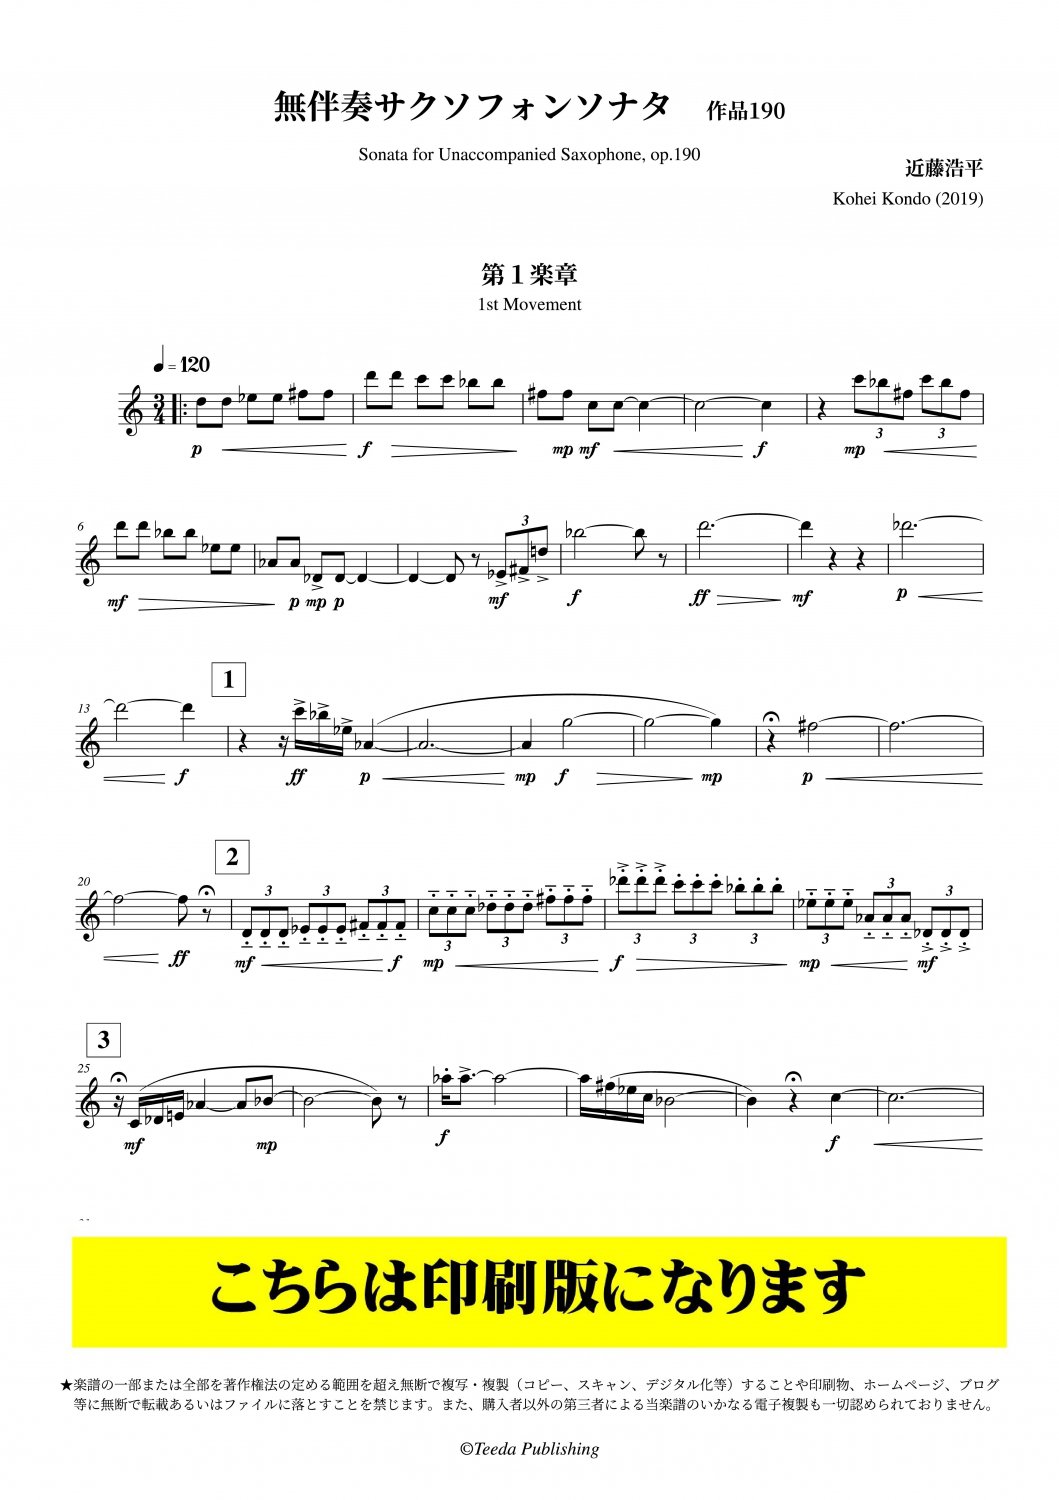 サクソフォンソロ譜] 無伴奏サクソフォンソナタ (近藤浩平)